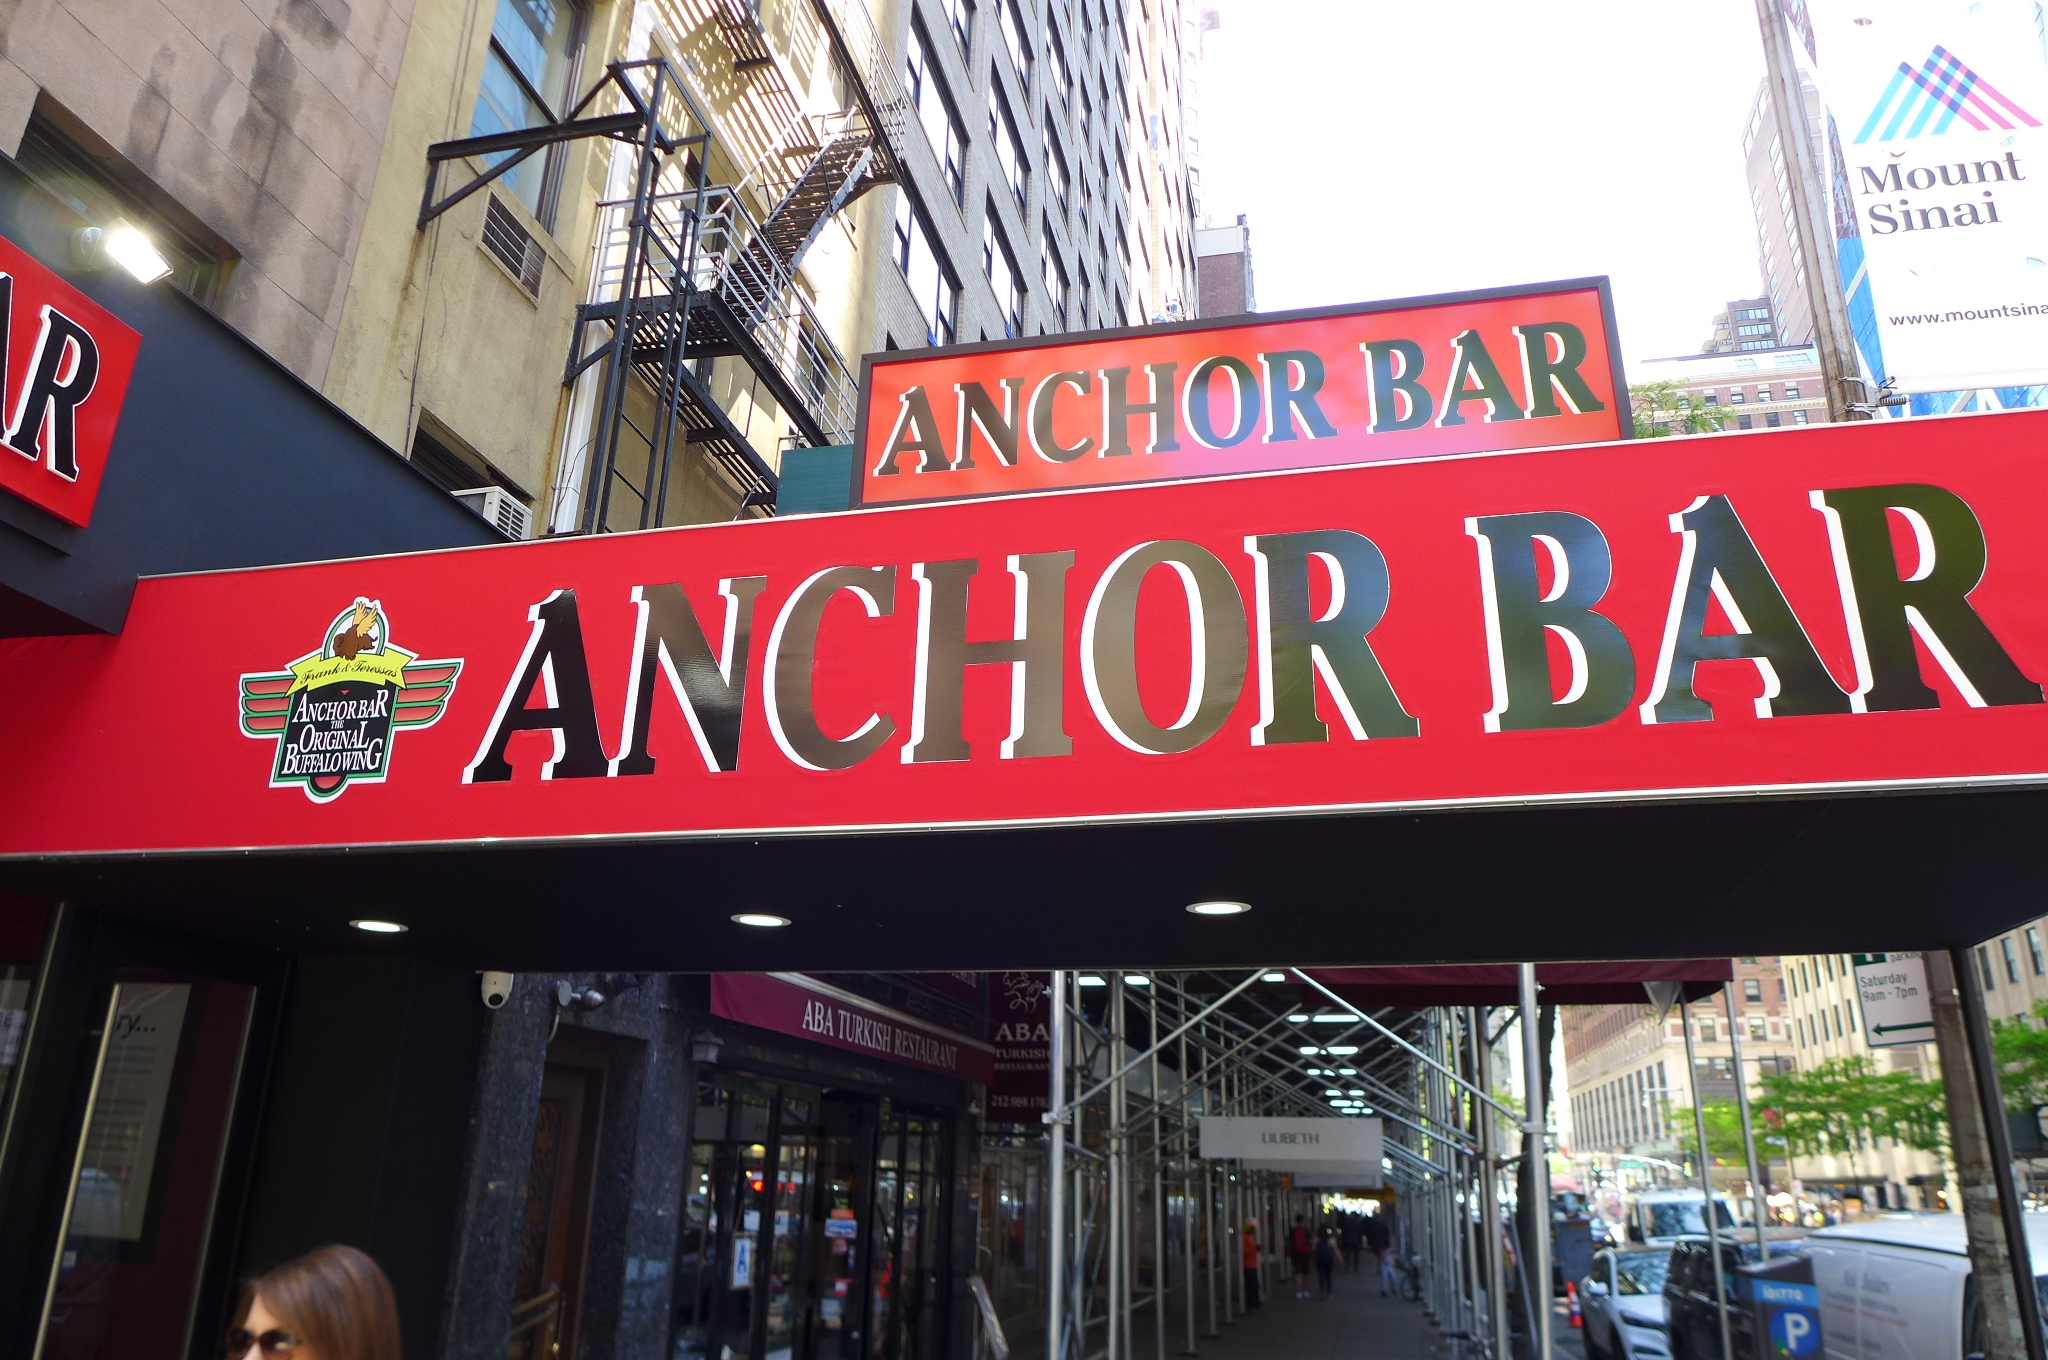 Anchor bar exterior sign